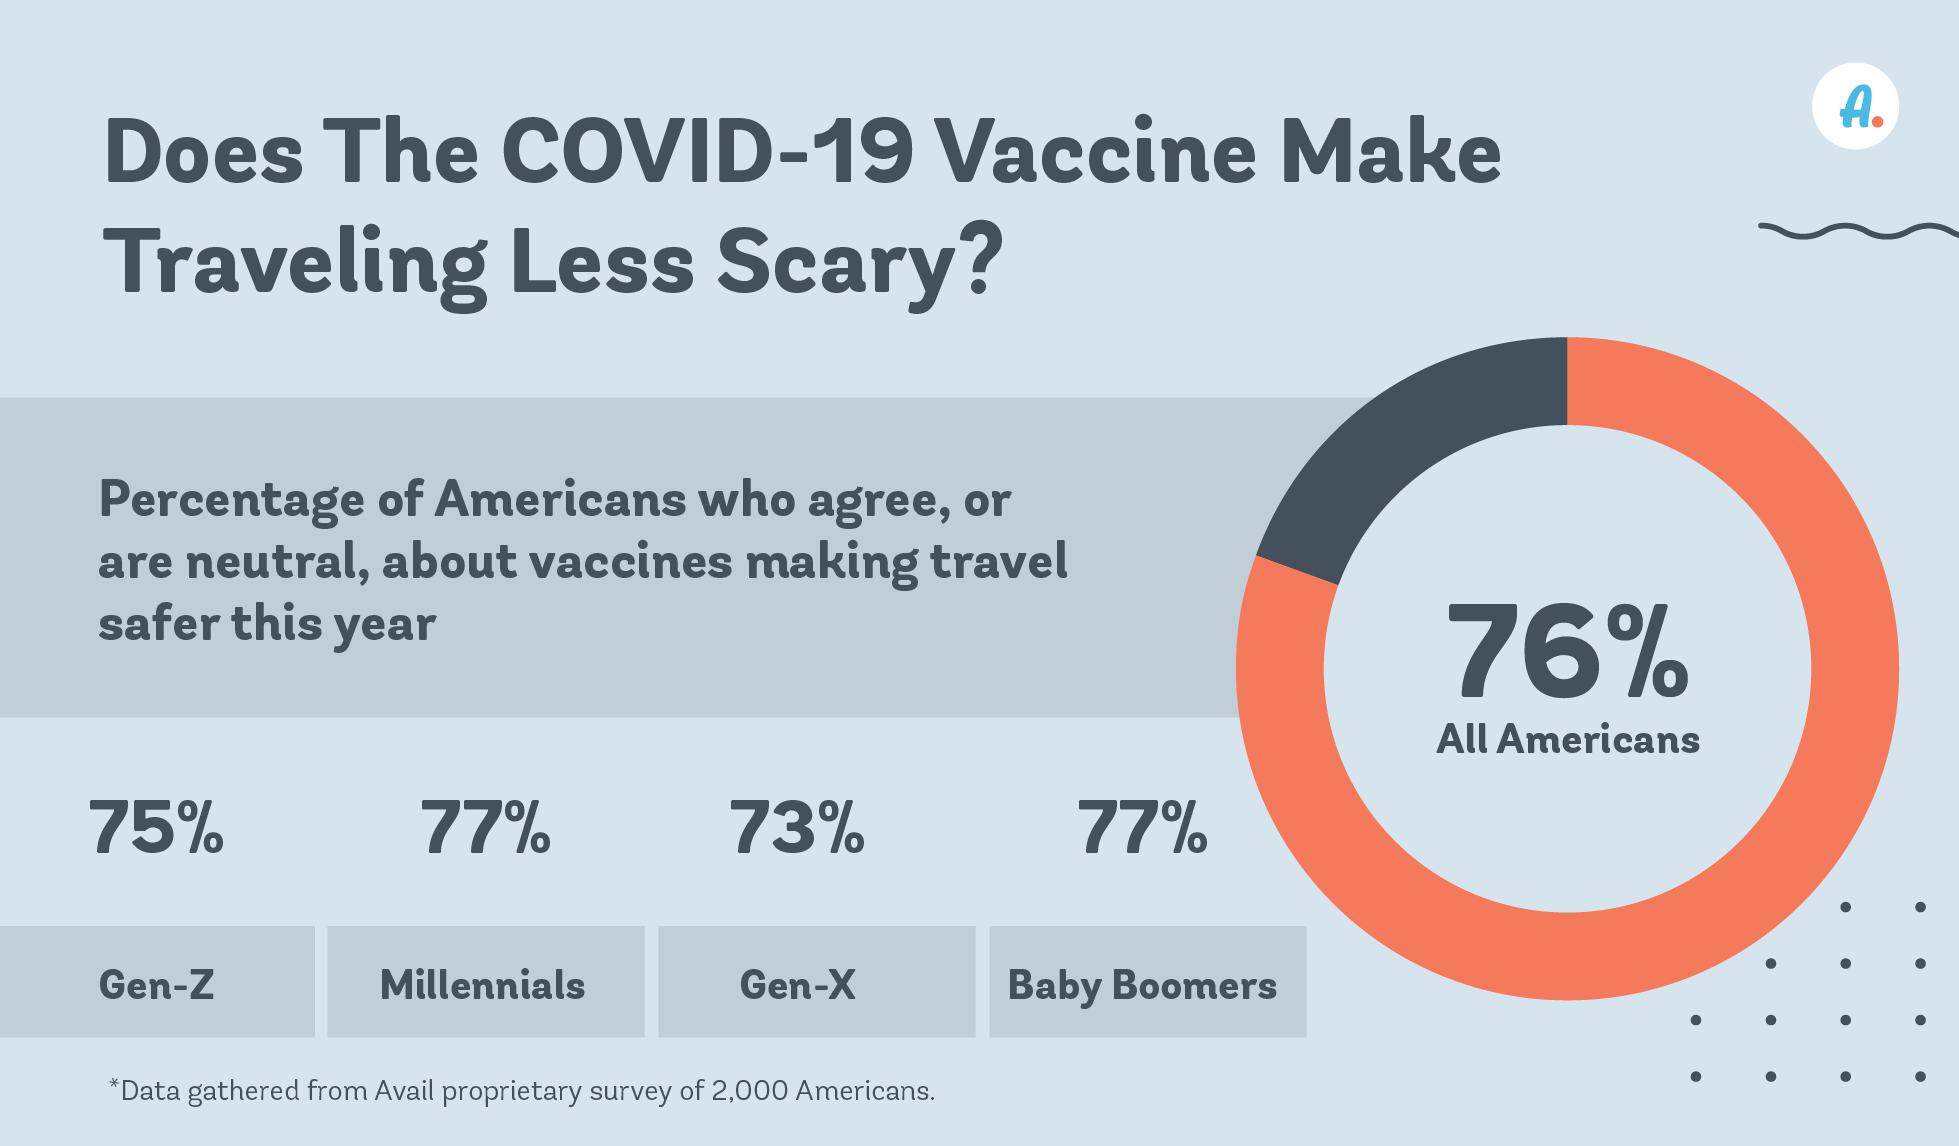 covid 19 vaccine graphic